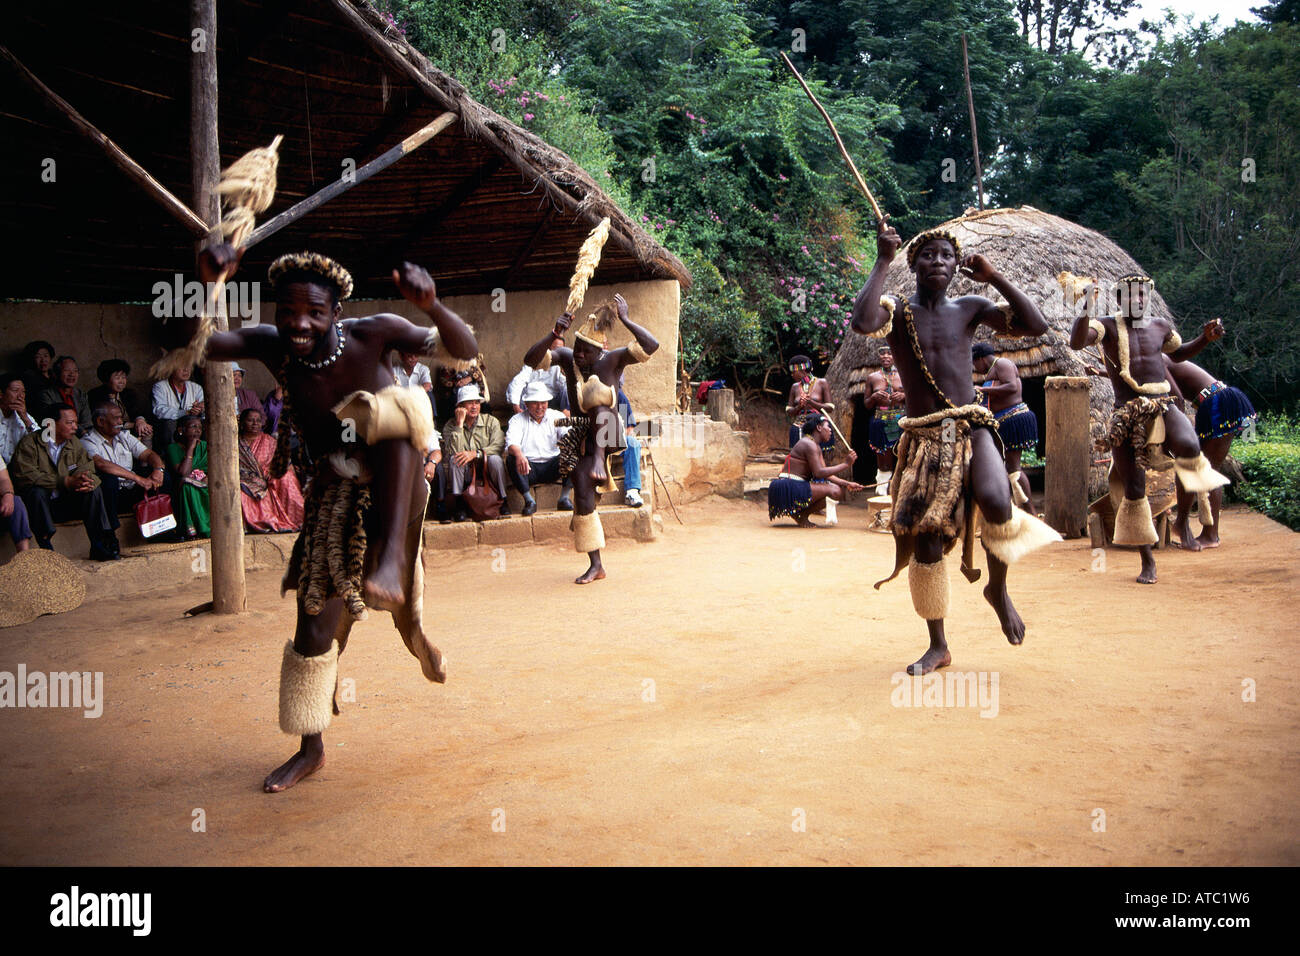 Un certo numero di Zulu tribesmen vestito con la tradizionale pelli di animali e loro weilding assegais eseguendo un rituale di danza di guerra mentre guardati da una folla di donne e i visitatori in un villaggio Zulu Foto Stock